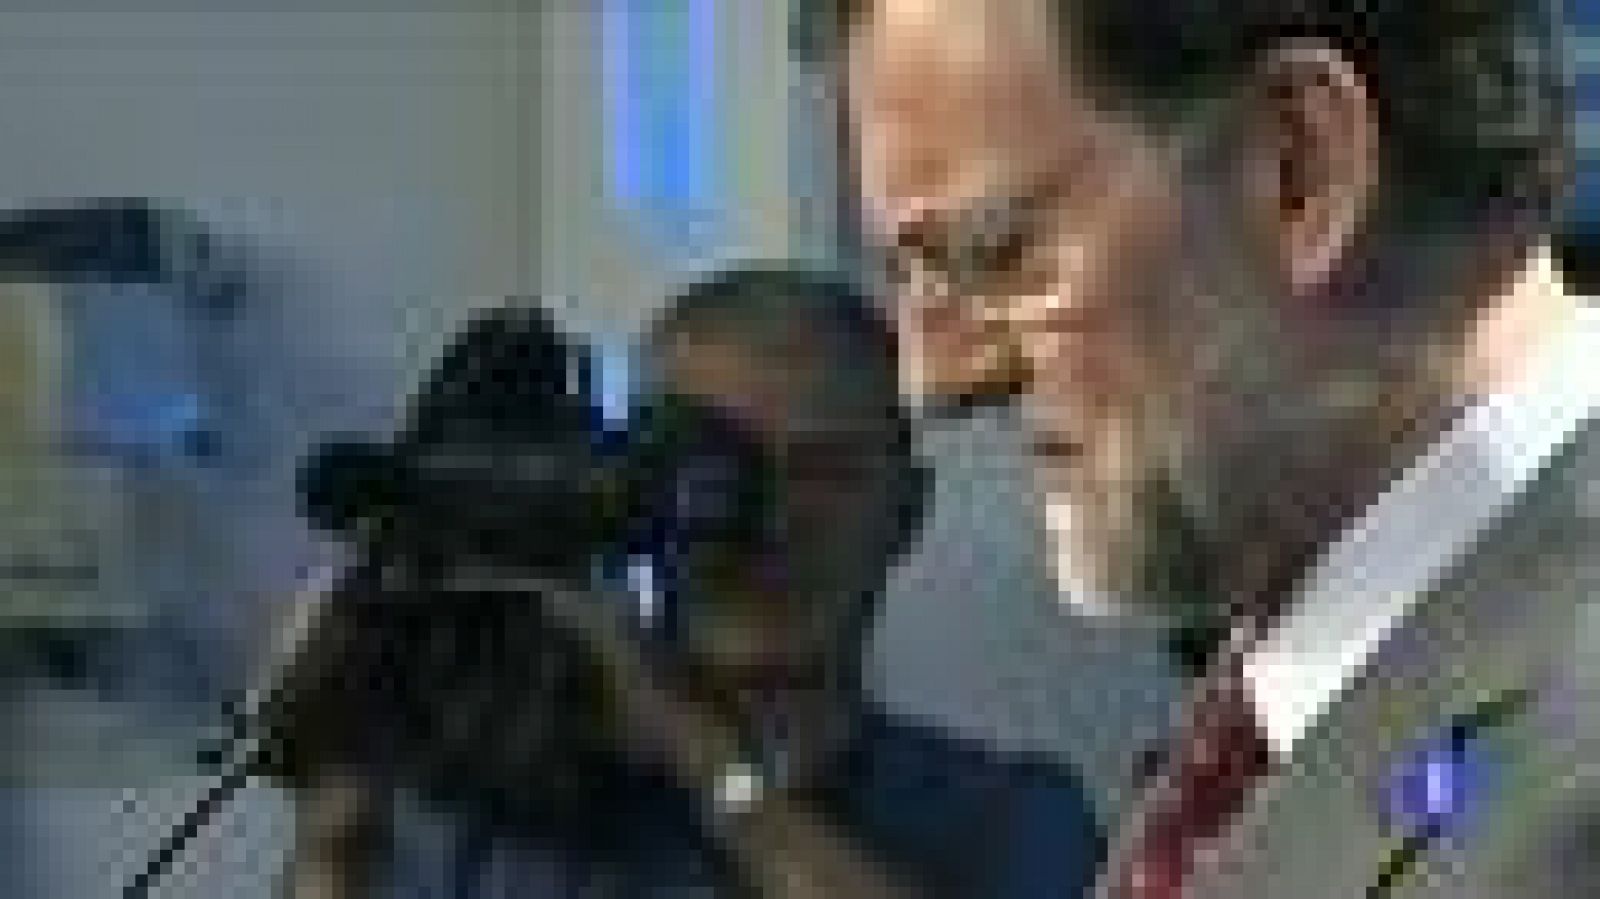  Mariano Rajoy afirma que no va haber ningún rescate europeo de bancos españoles